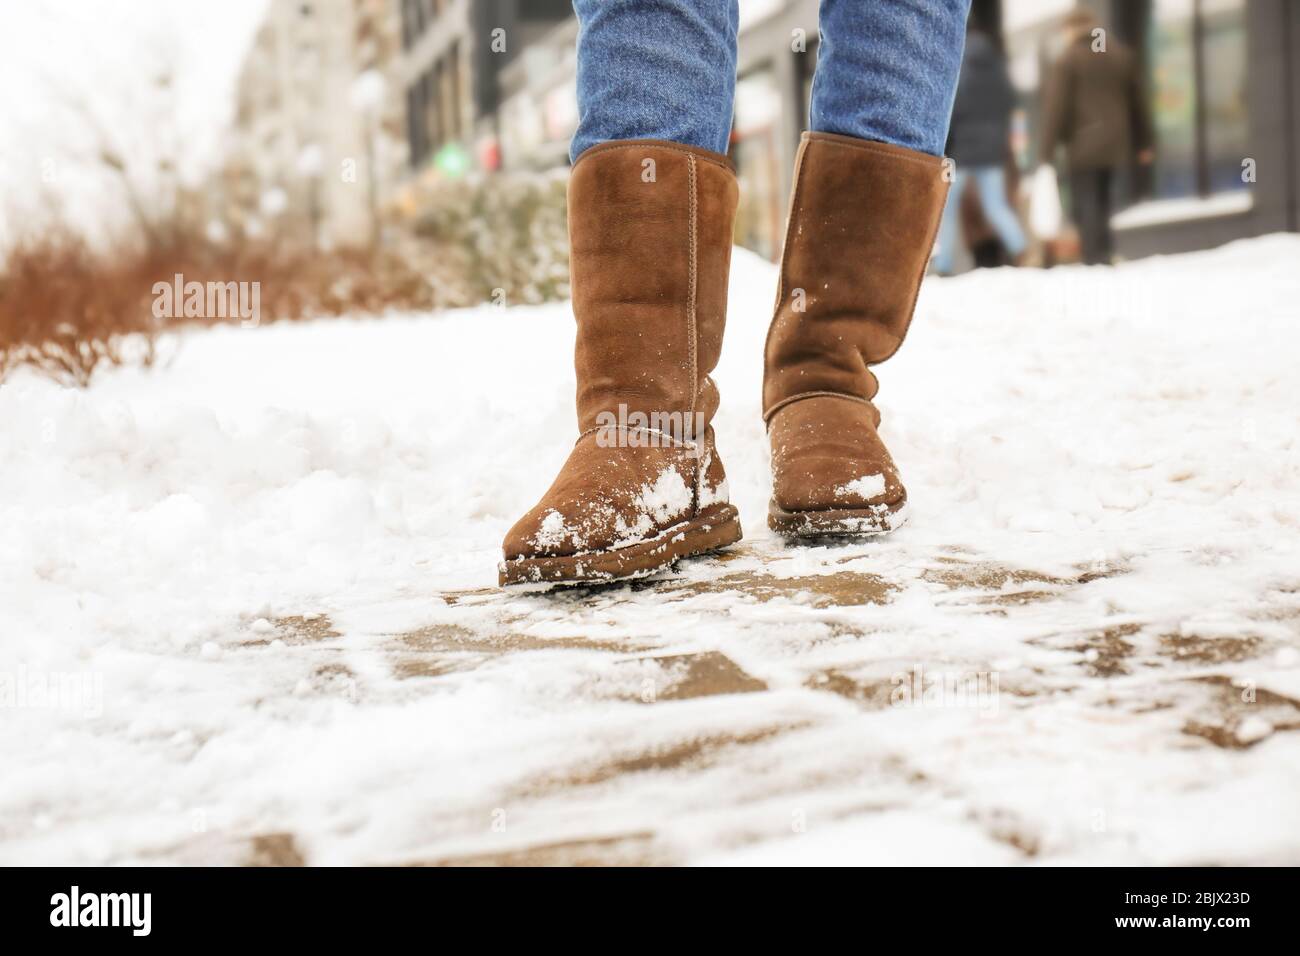 Запах зимней обуви. Ботинки на тающем снегу. Сапоги подходящие для таянья снега. Зимняя обувь в реагентах. Утеплители для ног зимой.